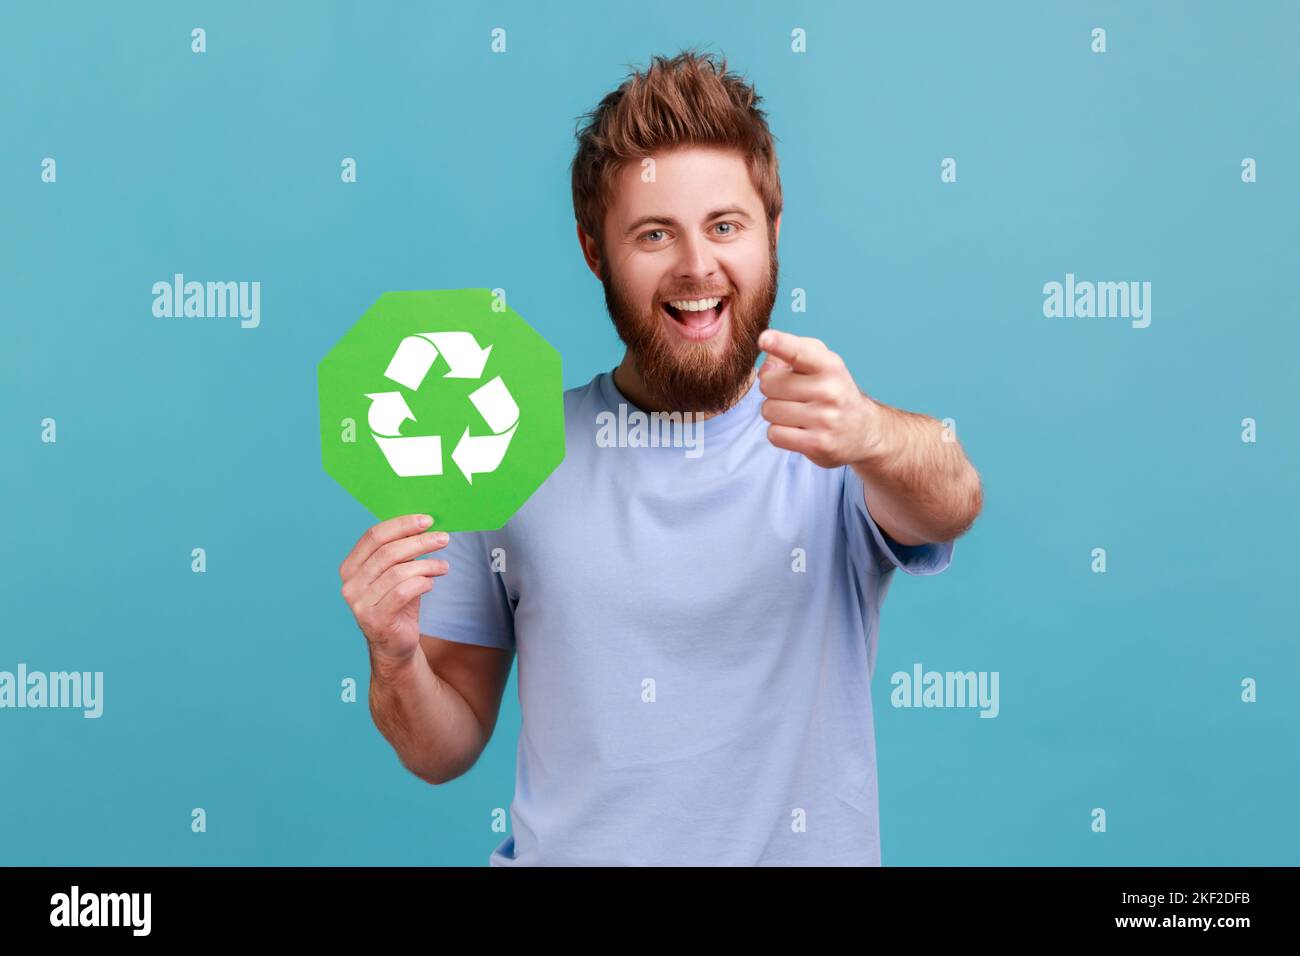 Porträt eines äußerst glücklichen, aufgeregt bärtigen Mannes mit grünem Recycling-Schild, Umweltschutz, Ökologie-Konzept, zeigt auf die Kamera. Innenaufnahme des Studios isoliert auf blauem Hintergrund. Stockfoto